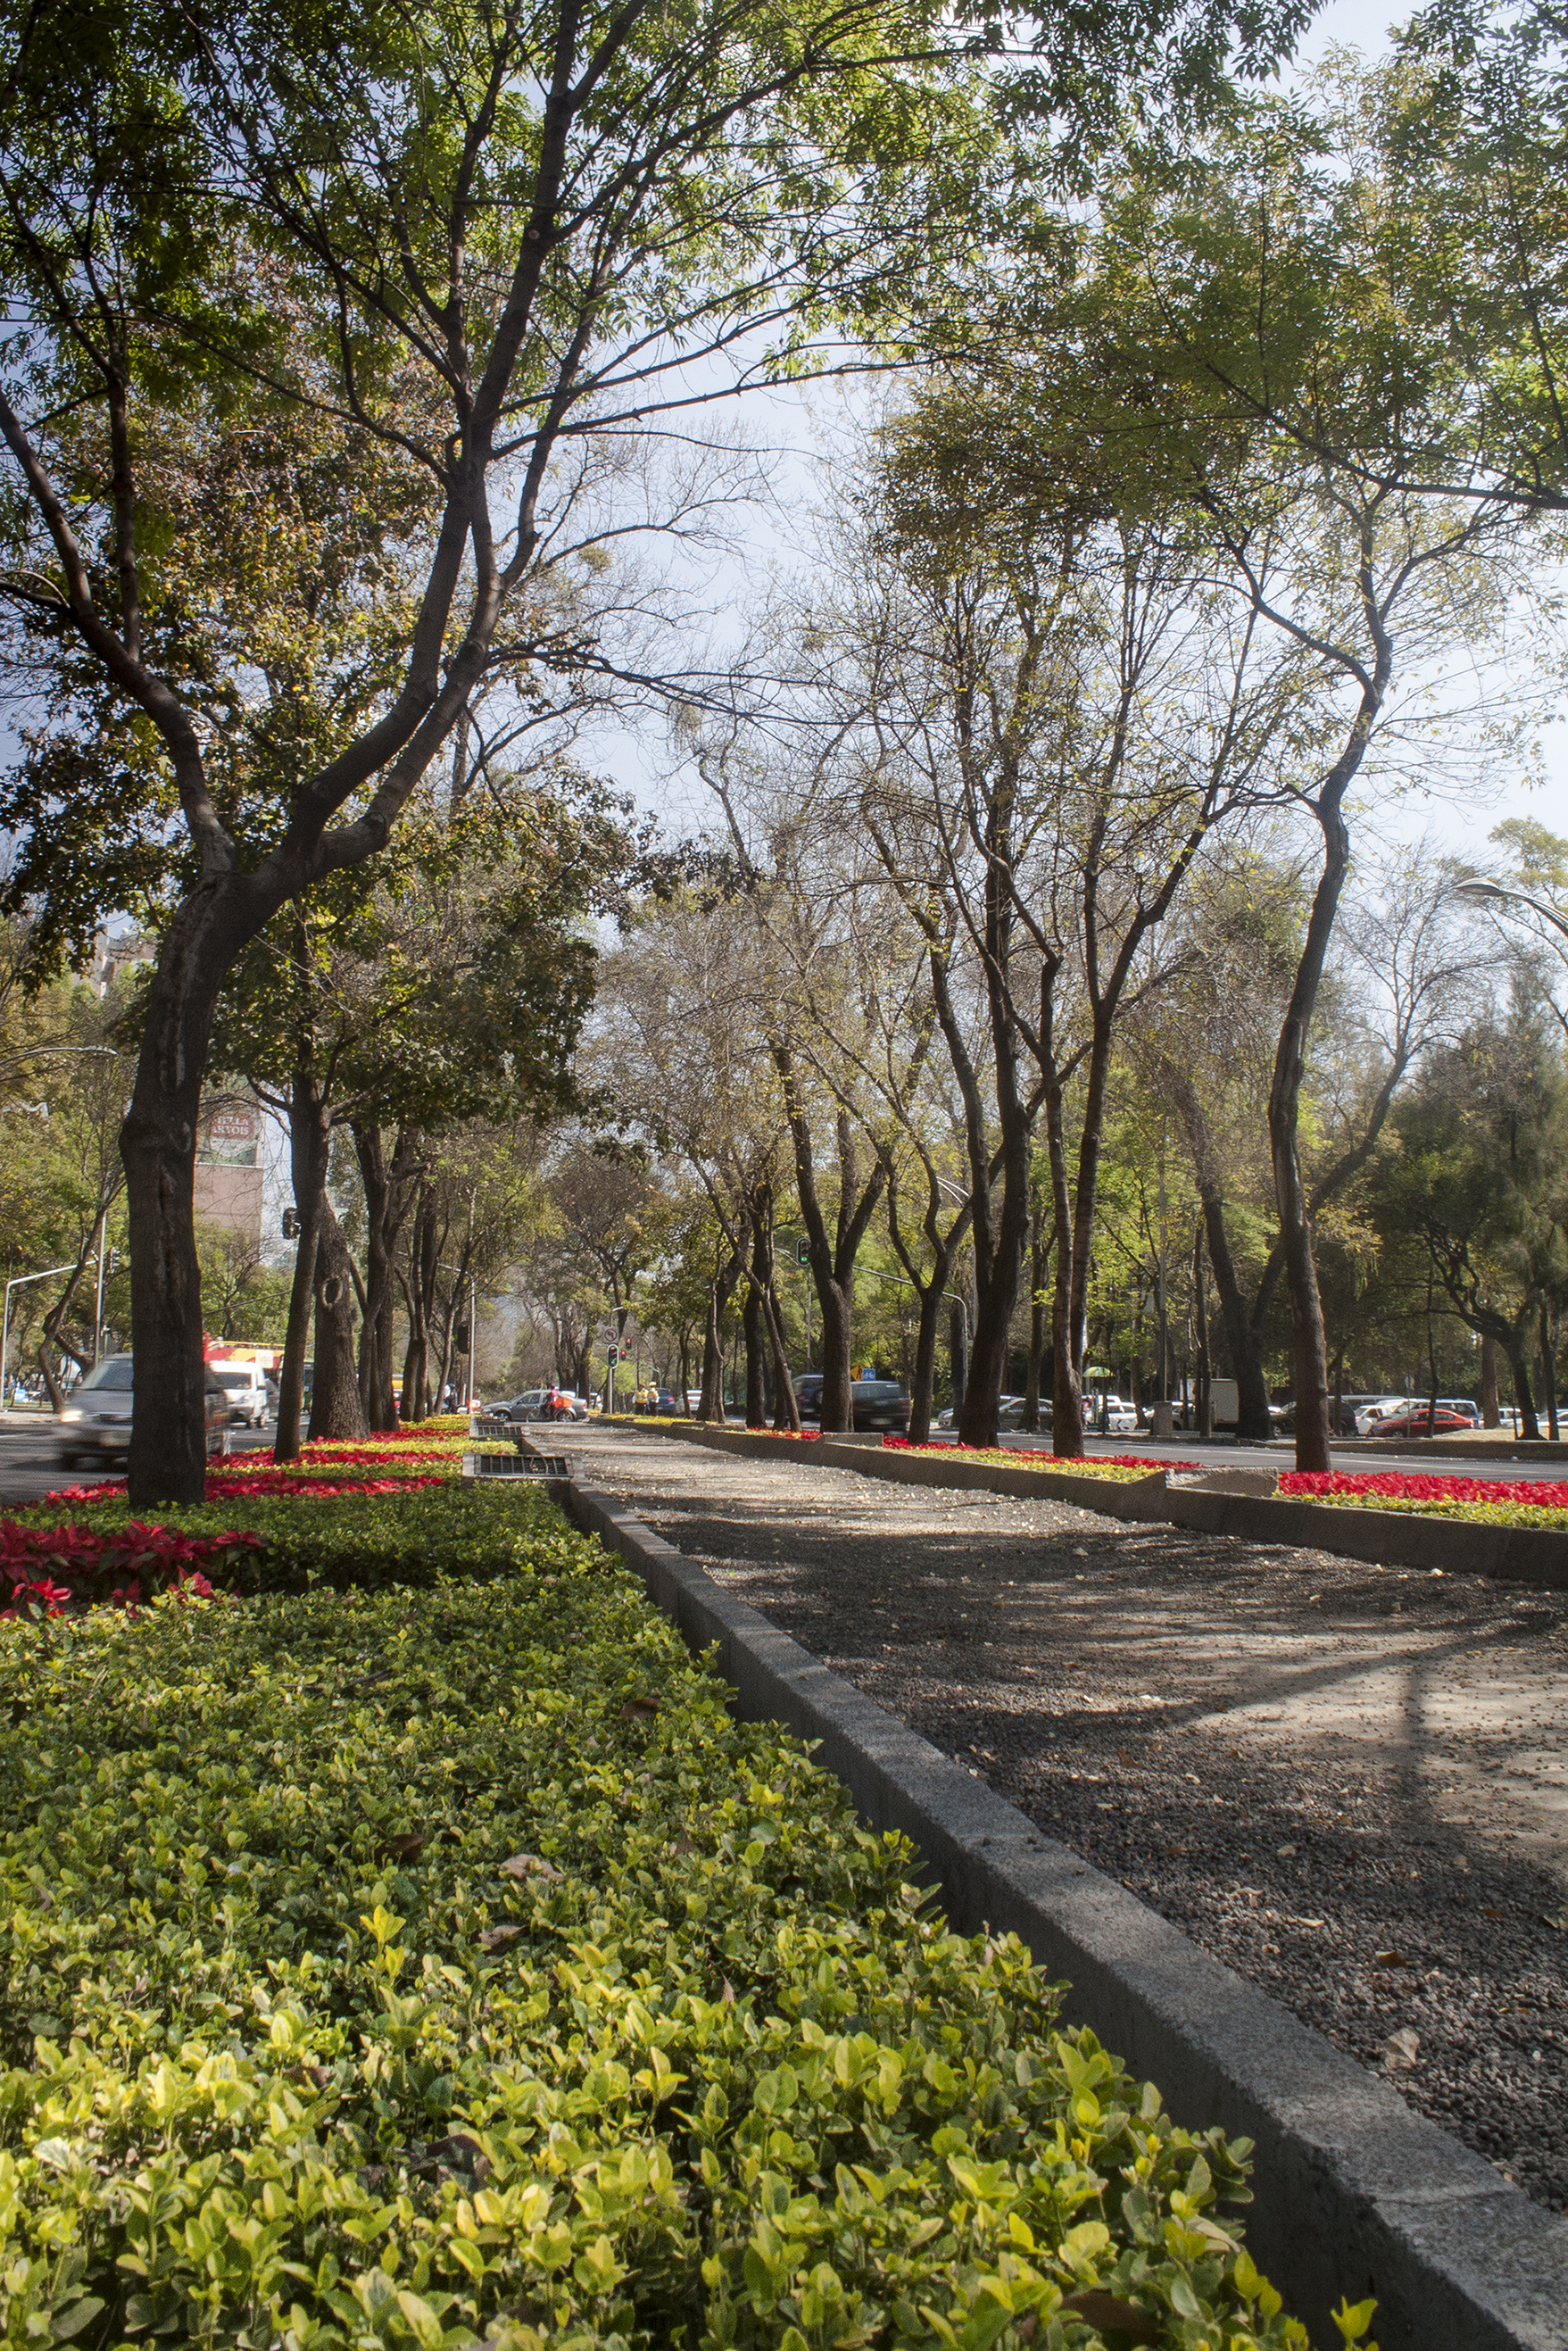 Paseo de la Reforma Cdmex, Mexico